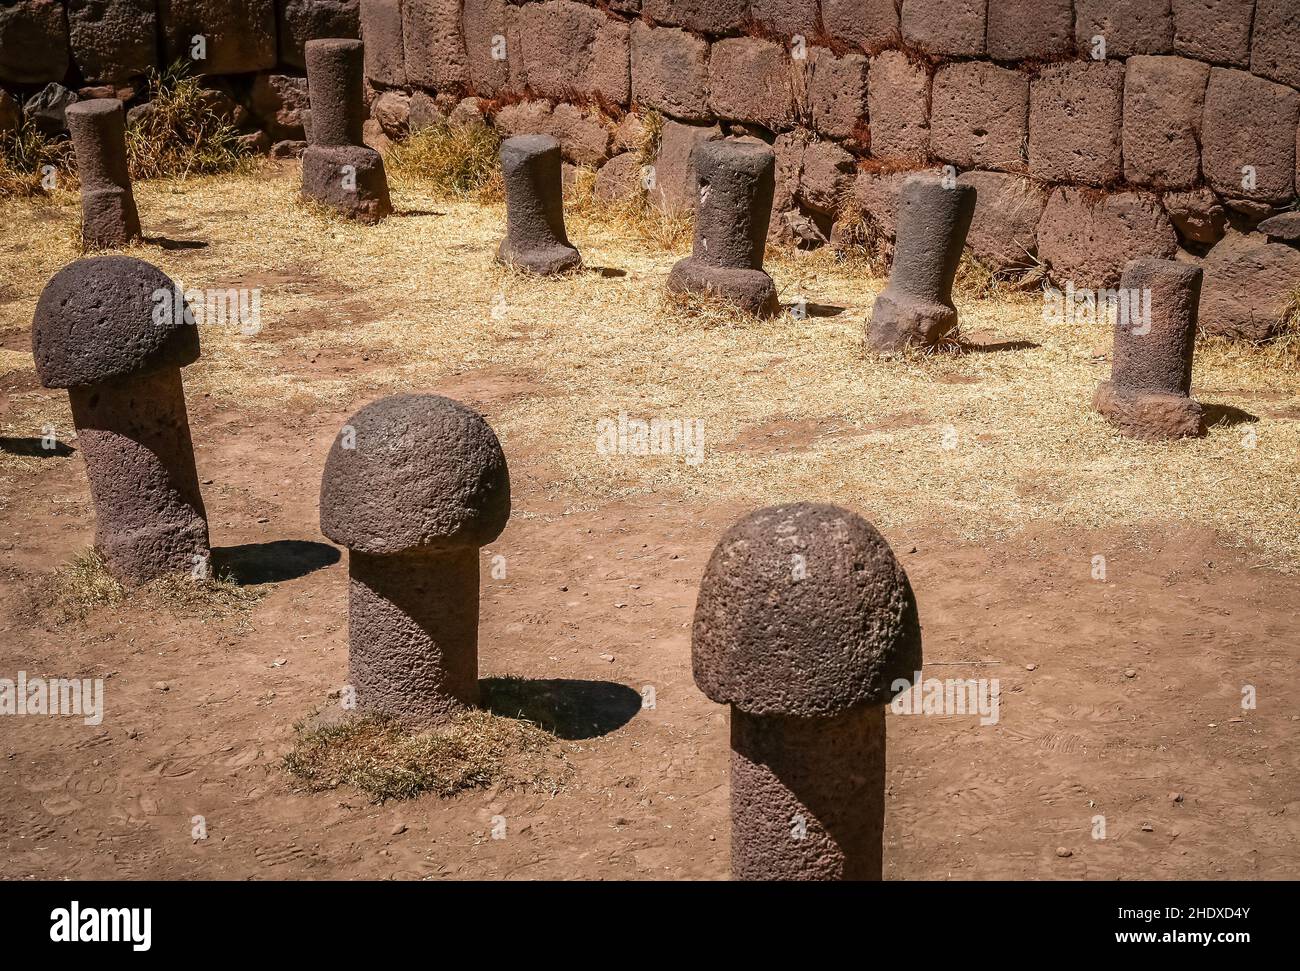 puno, Stone Phallus, chucuito temple of fertility, punos Stock Photo